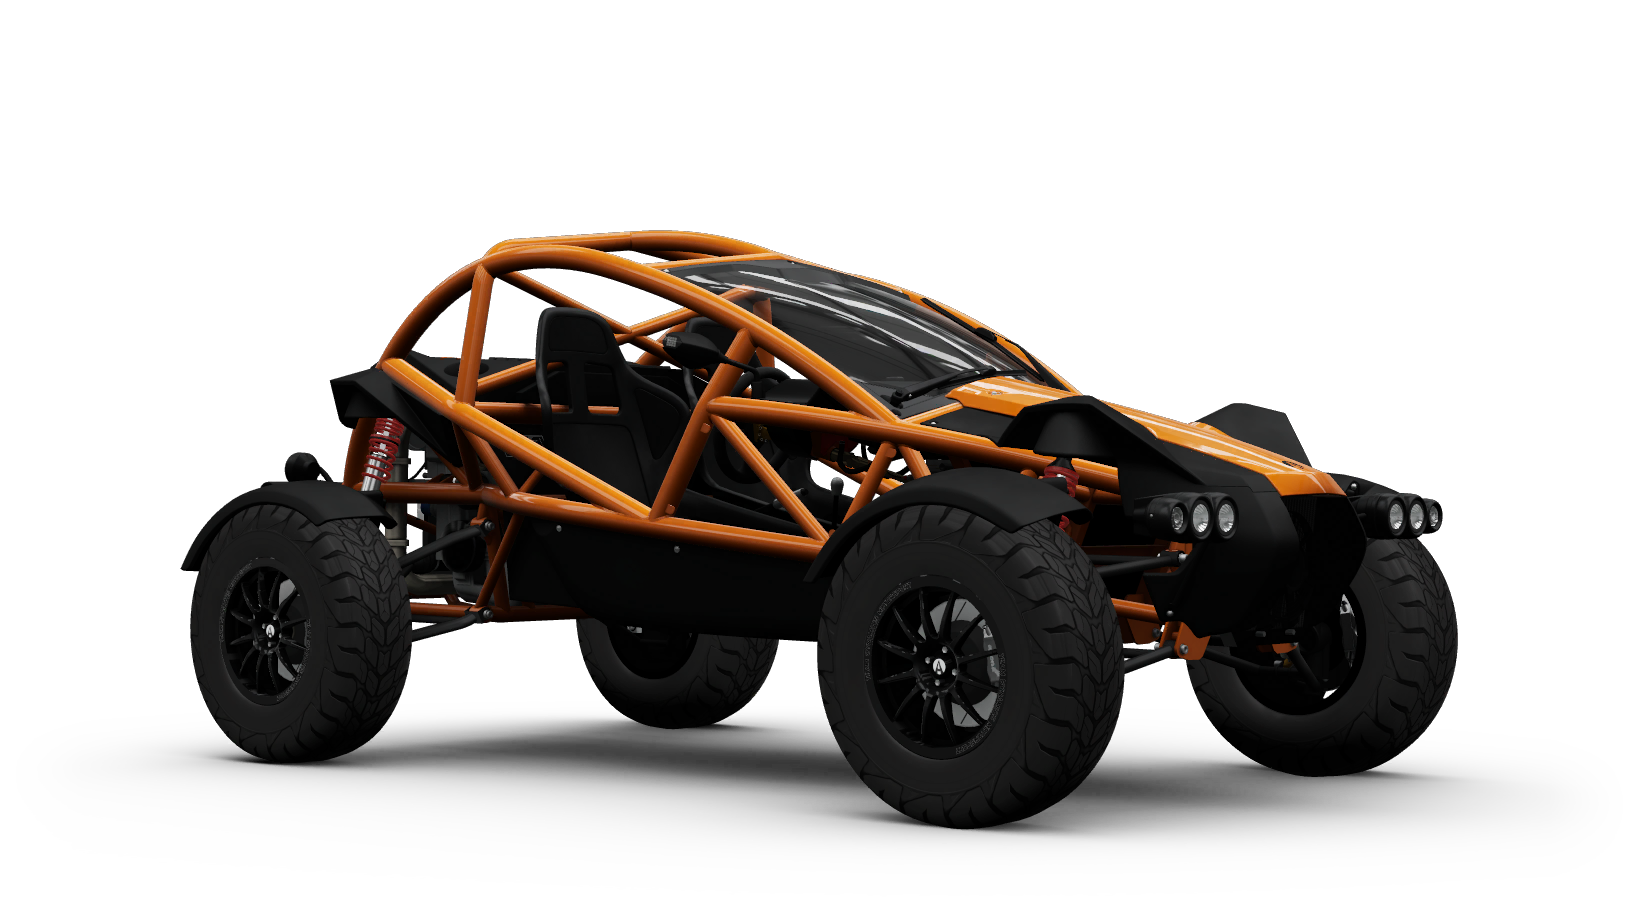 Forza Horizon 4/Any Terrain Car Pack, Forza Wiki